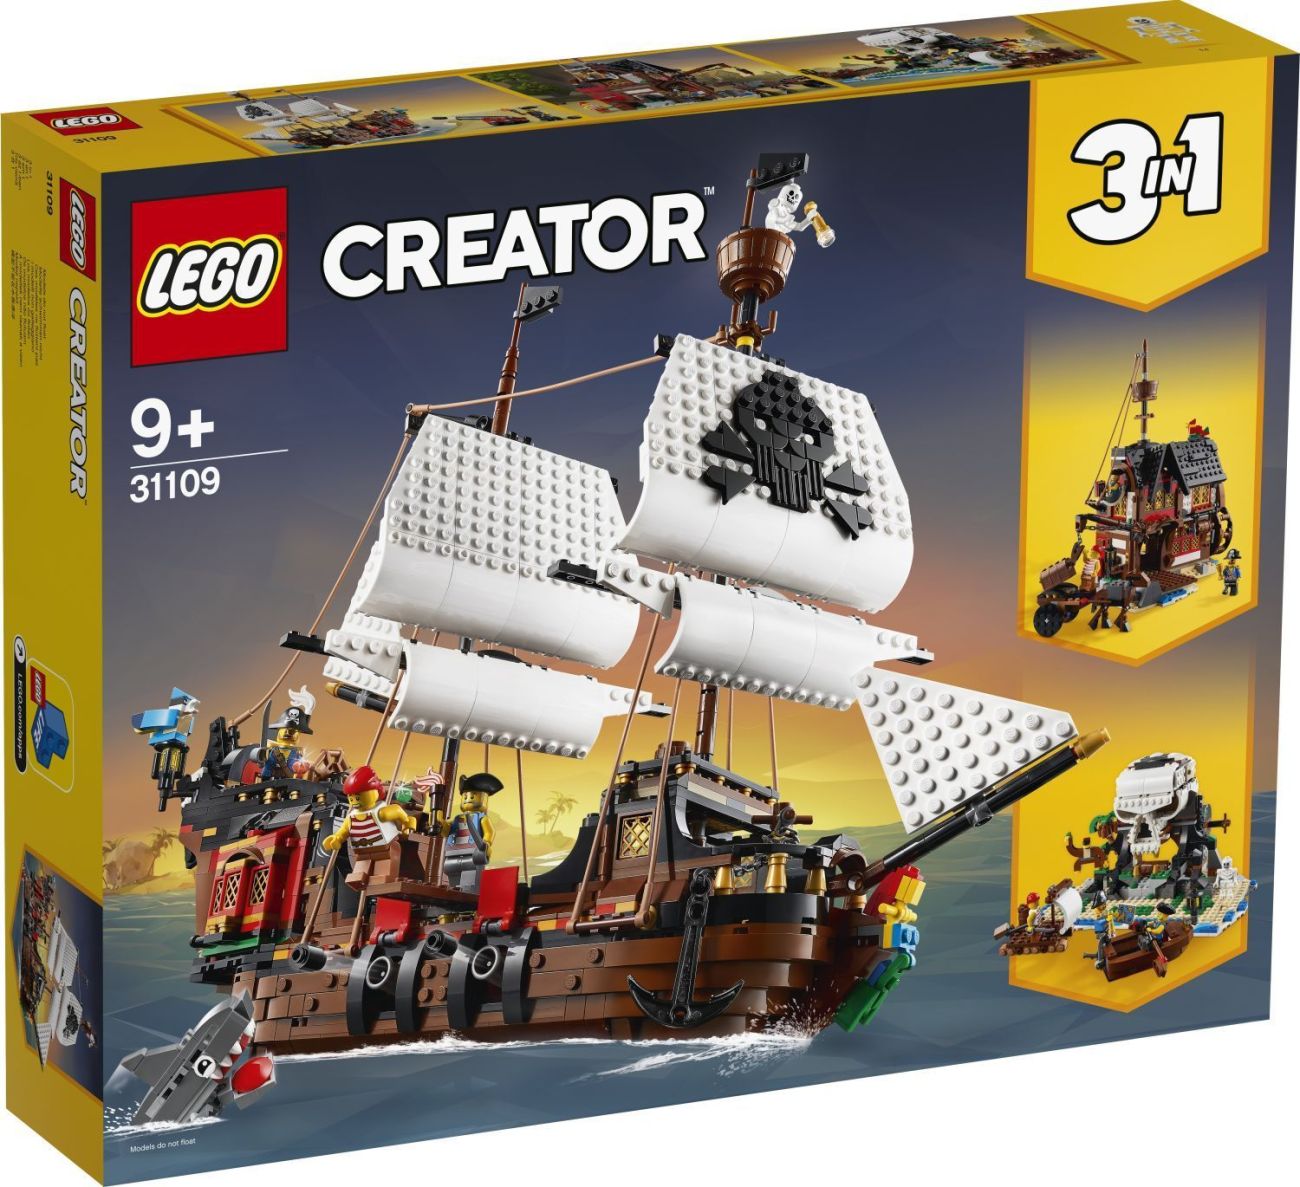 LEGO Creator 3in1 31109 – Piratenschiff (Pirate Ship)